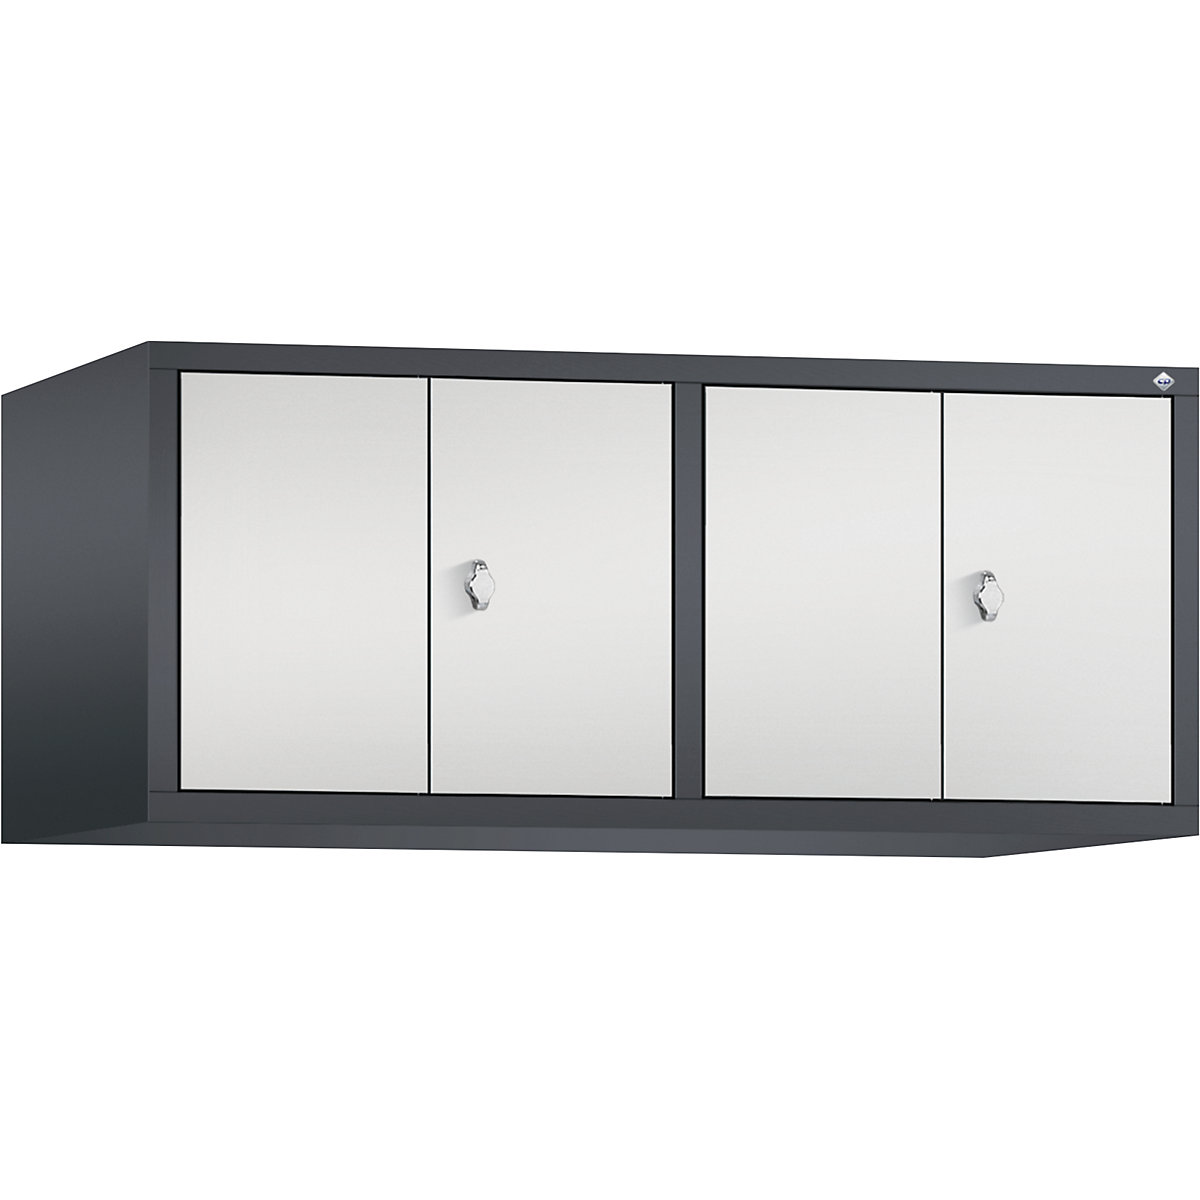 C+P – Altillo CLASSIC, puertas batientes que cierran al ras entre sí, 4 compartimentos, anchura de compartimento 300 mm, gris negruzco / gris luminoso